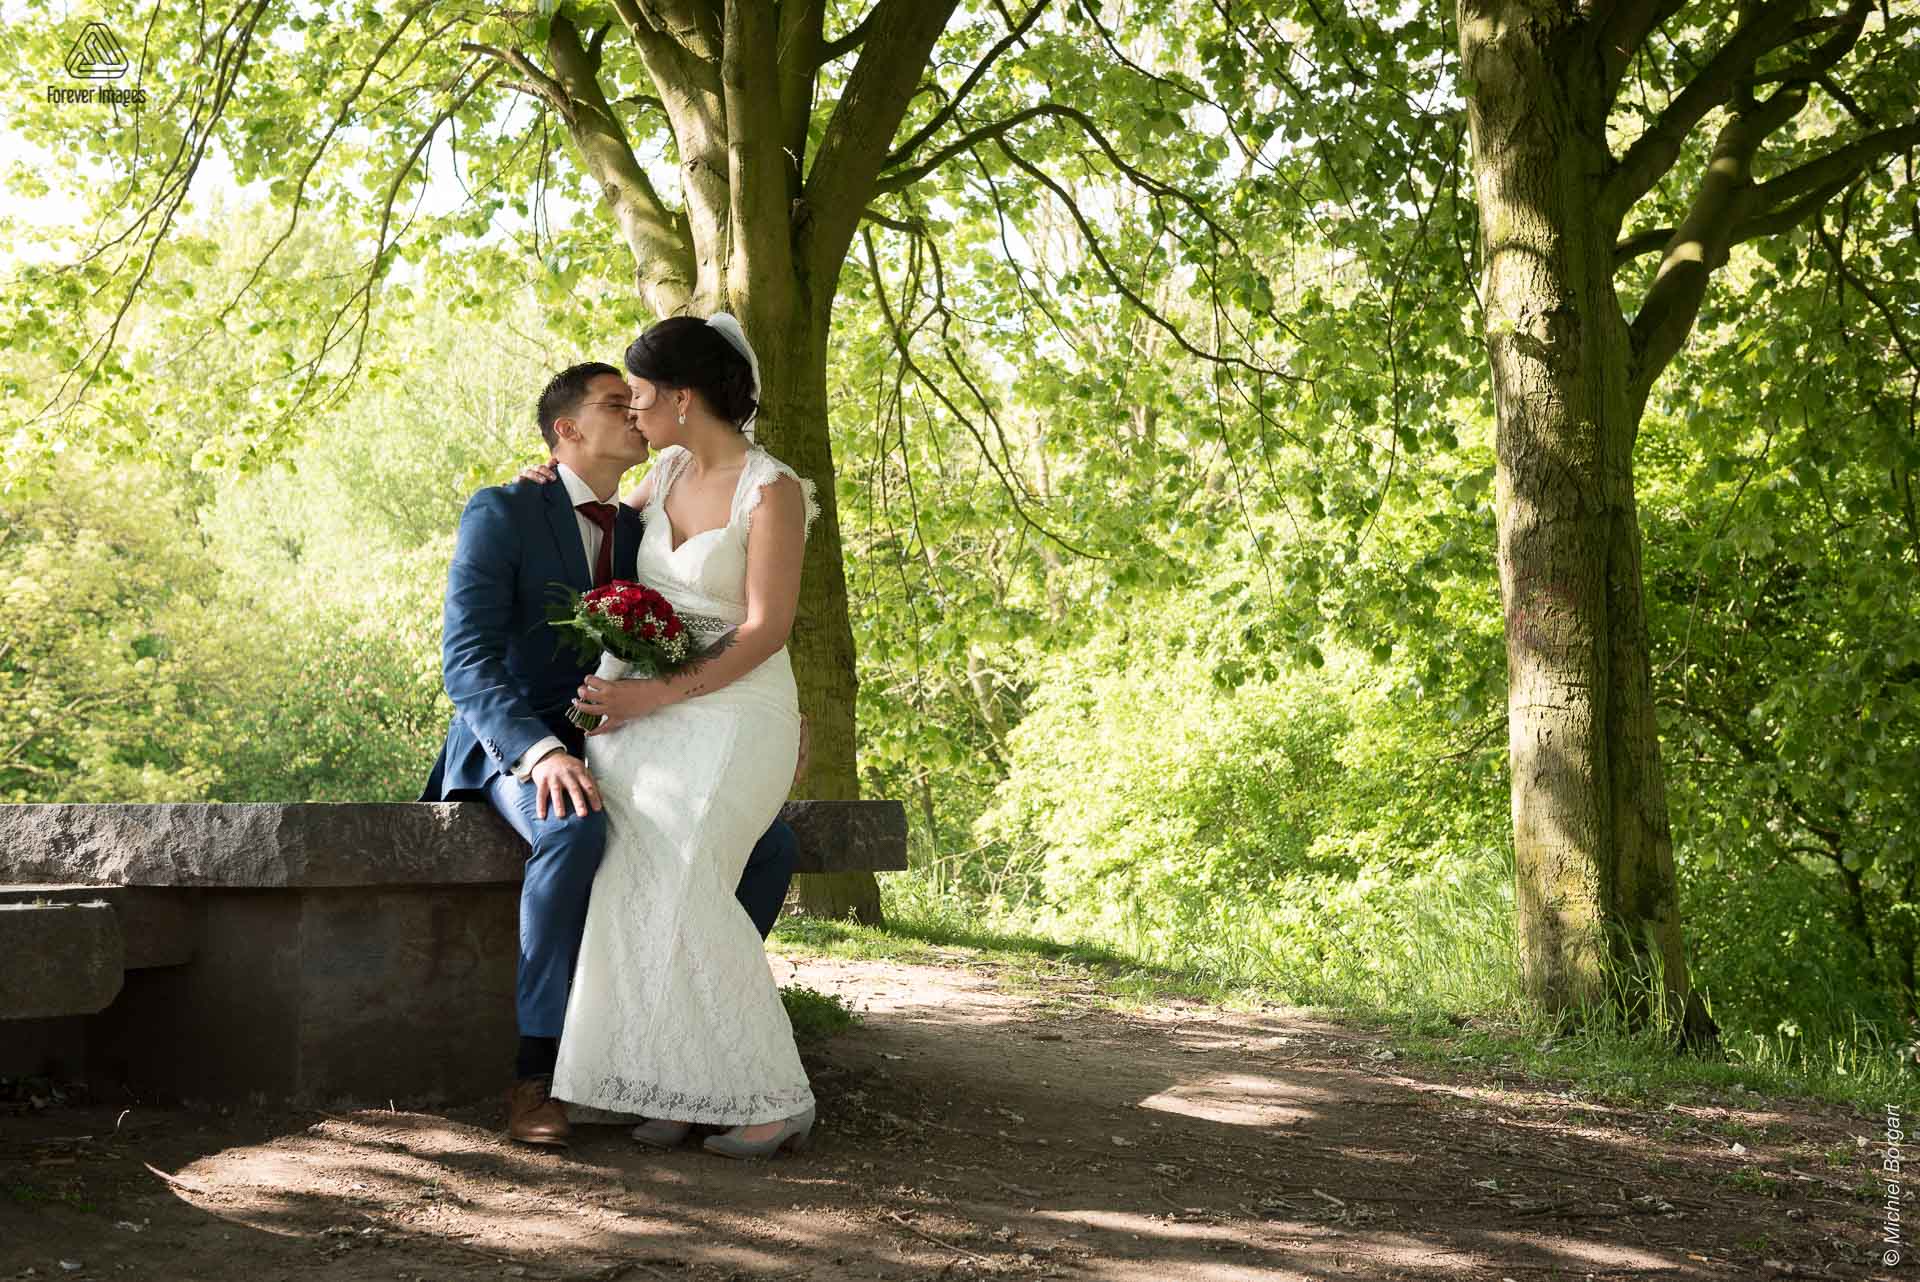 Bruidsfoto bruidspaar zittend kussend op heuvel in het park Oudegein in Nieuwegein | Kevin Leonie | Bruidsfotograaf Michiel Borgart - Forever Images.